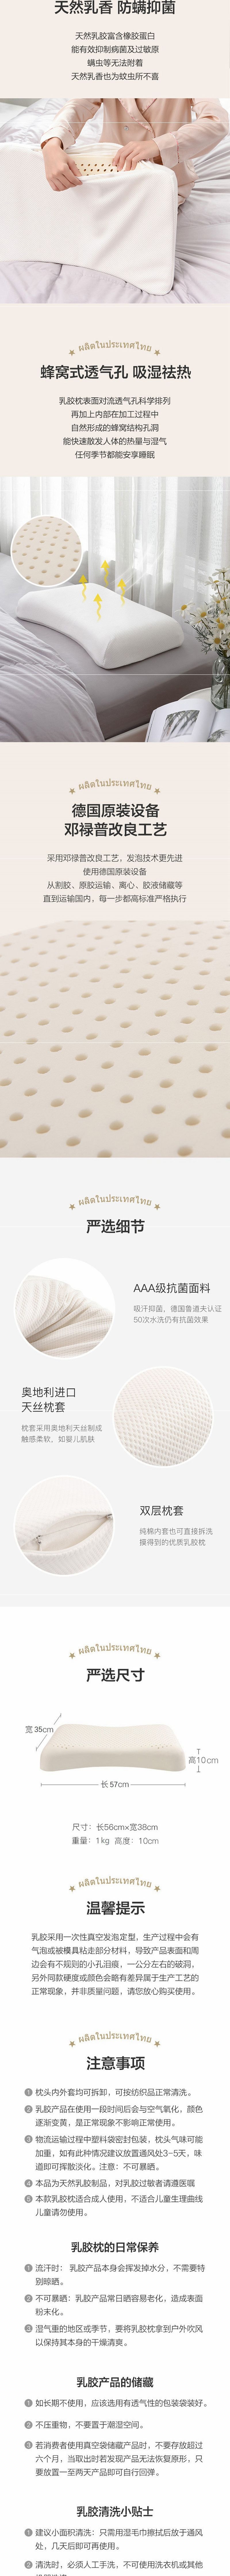 网易严选泰国制造 天然乳胶枕 护肩舒眠 升级抗菌 2个装